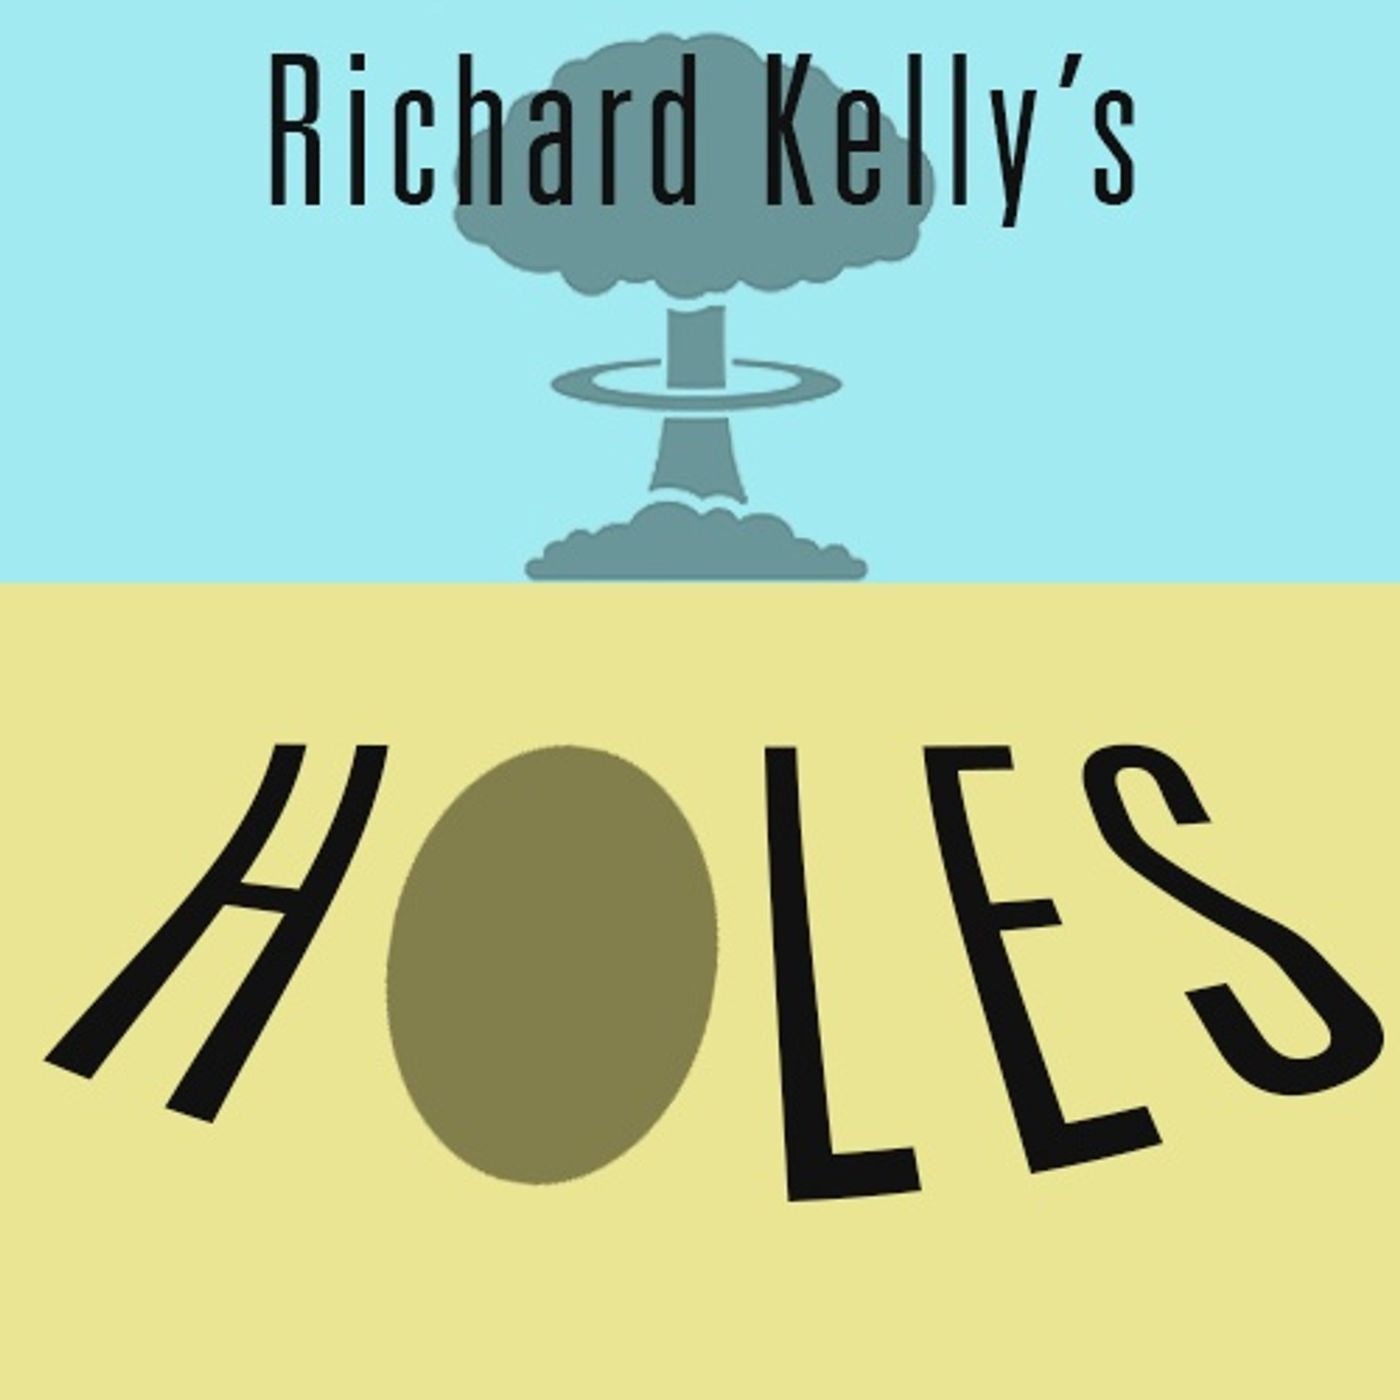 Richard Kelly’s Holes